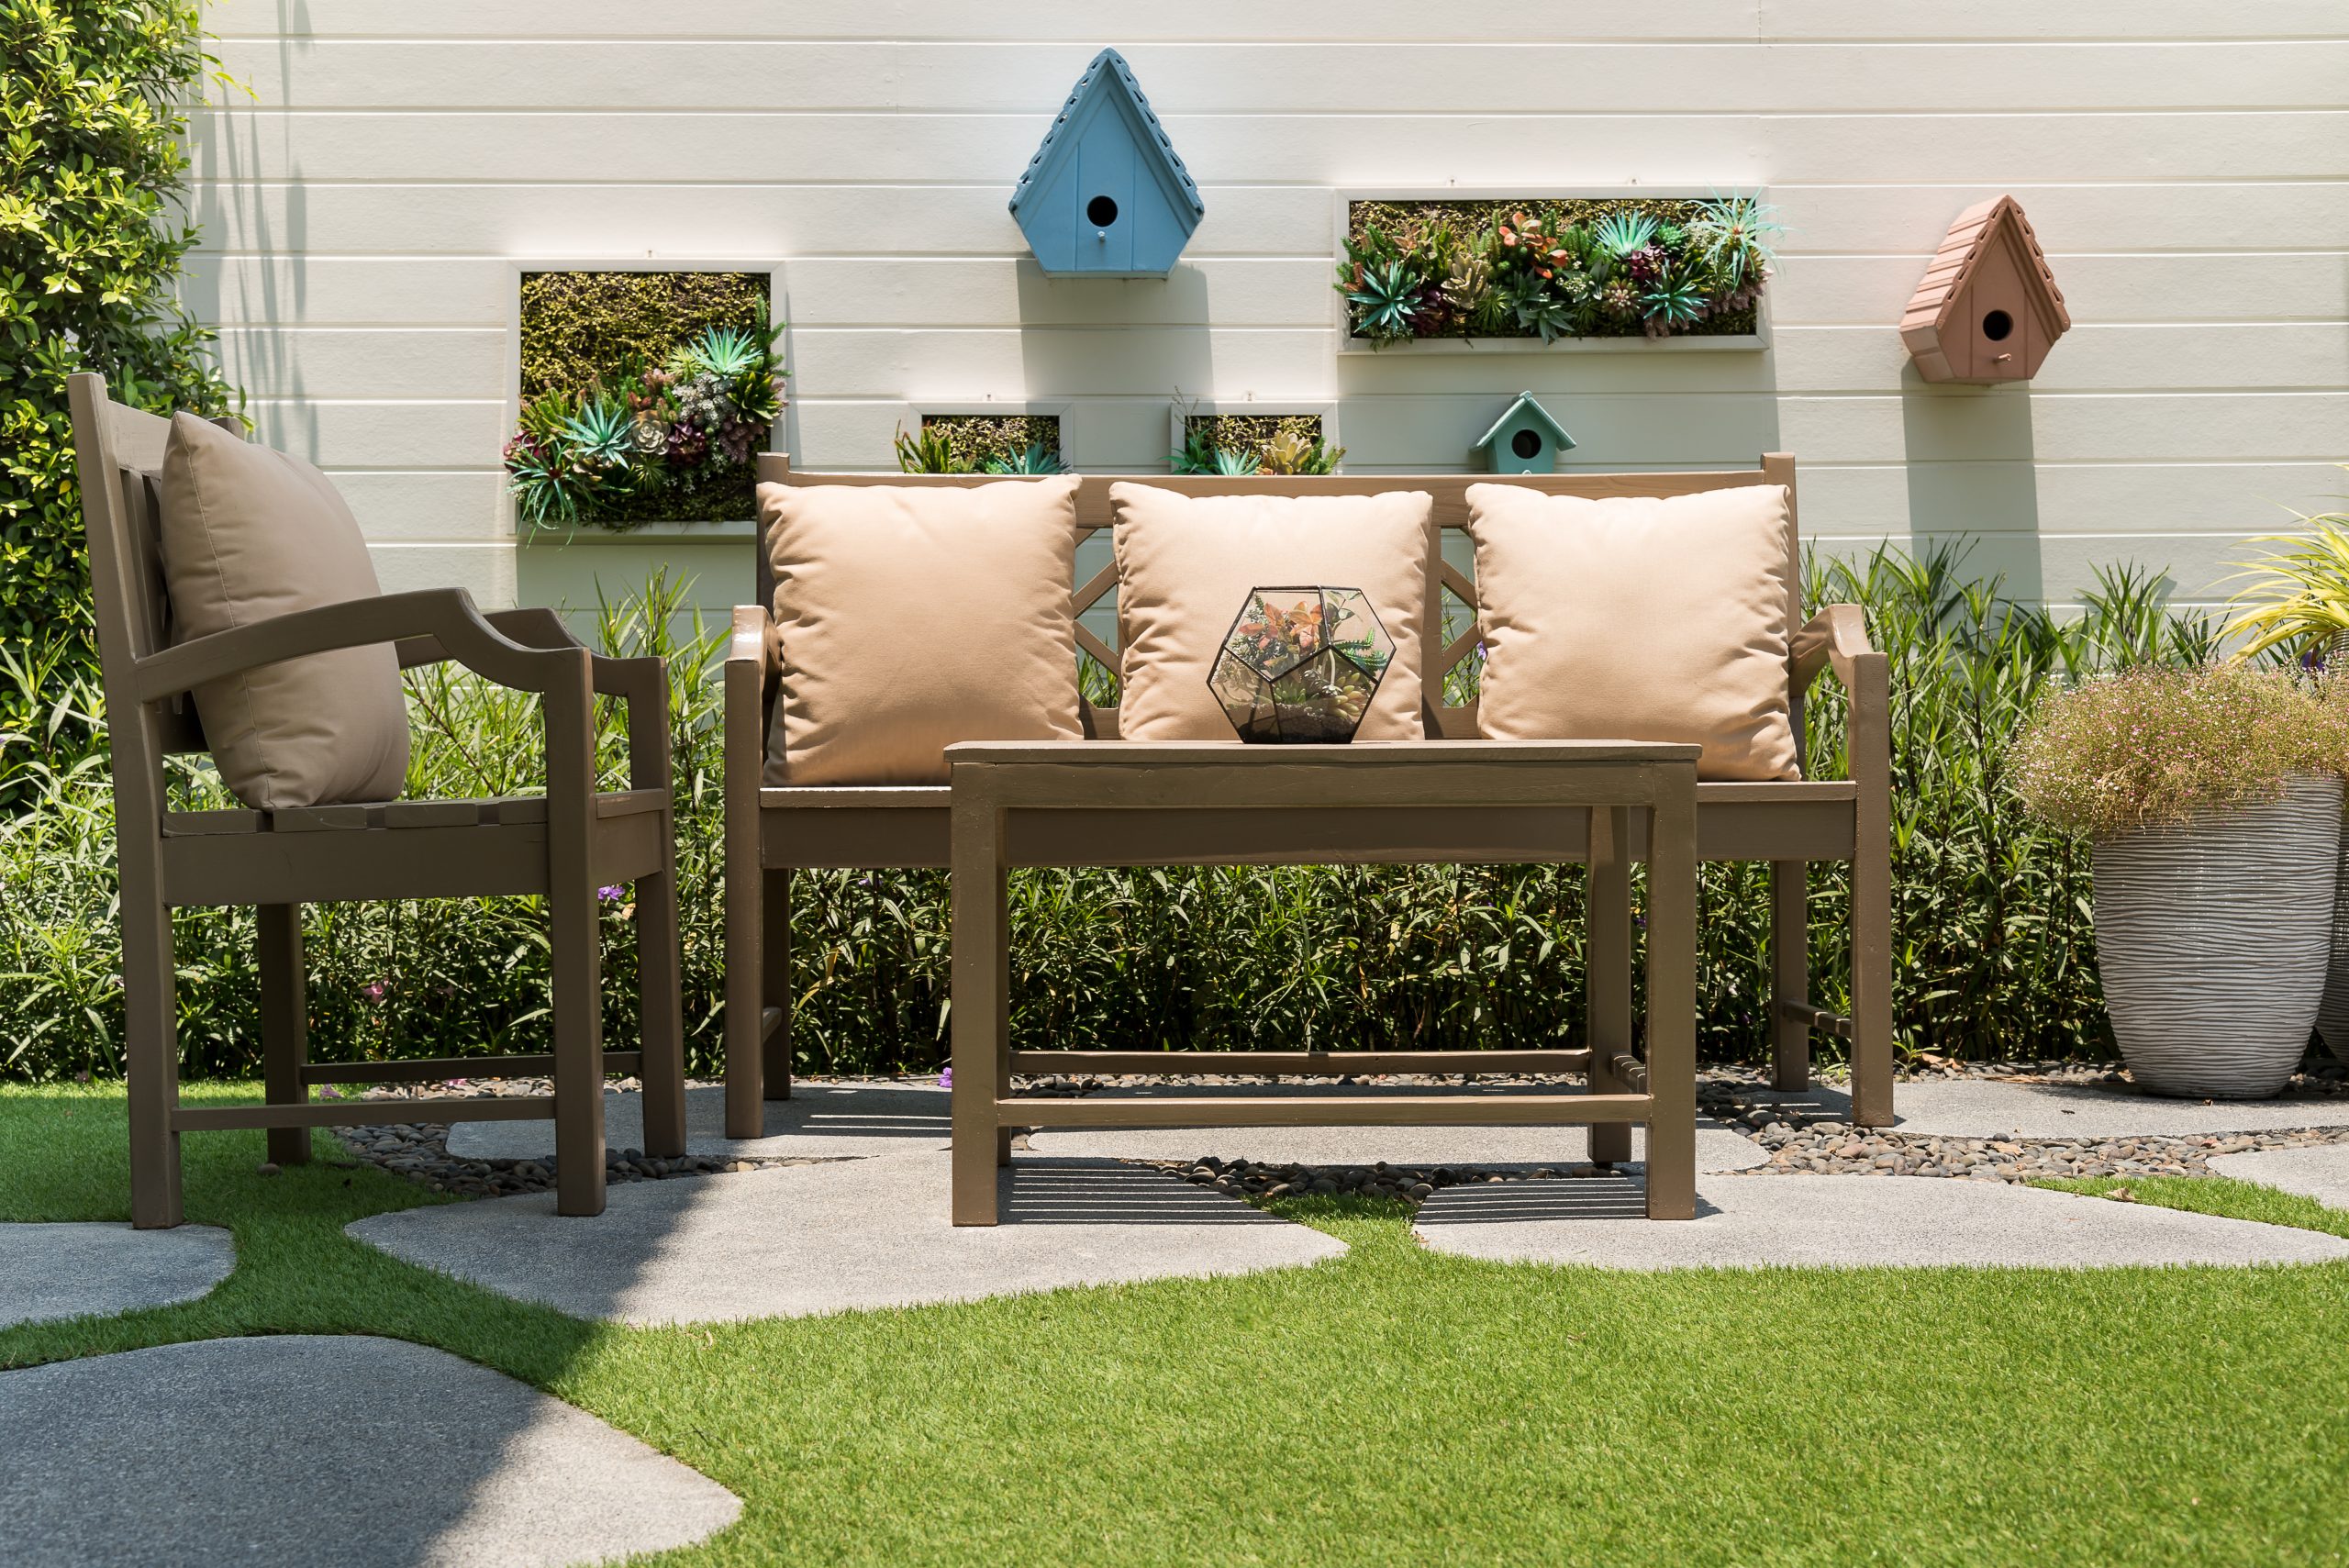 Eine gemütliche Sitzecke im Garten hat vor allem im Sommer Atmosphäre und Charme. Foto © fotolismthai stock adobe